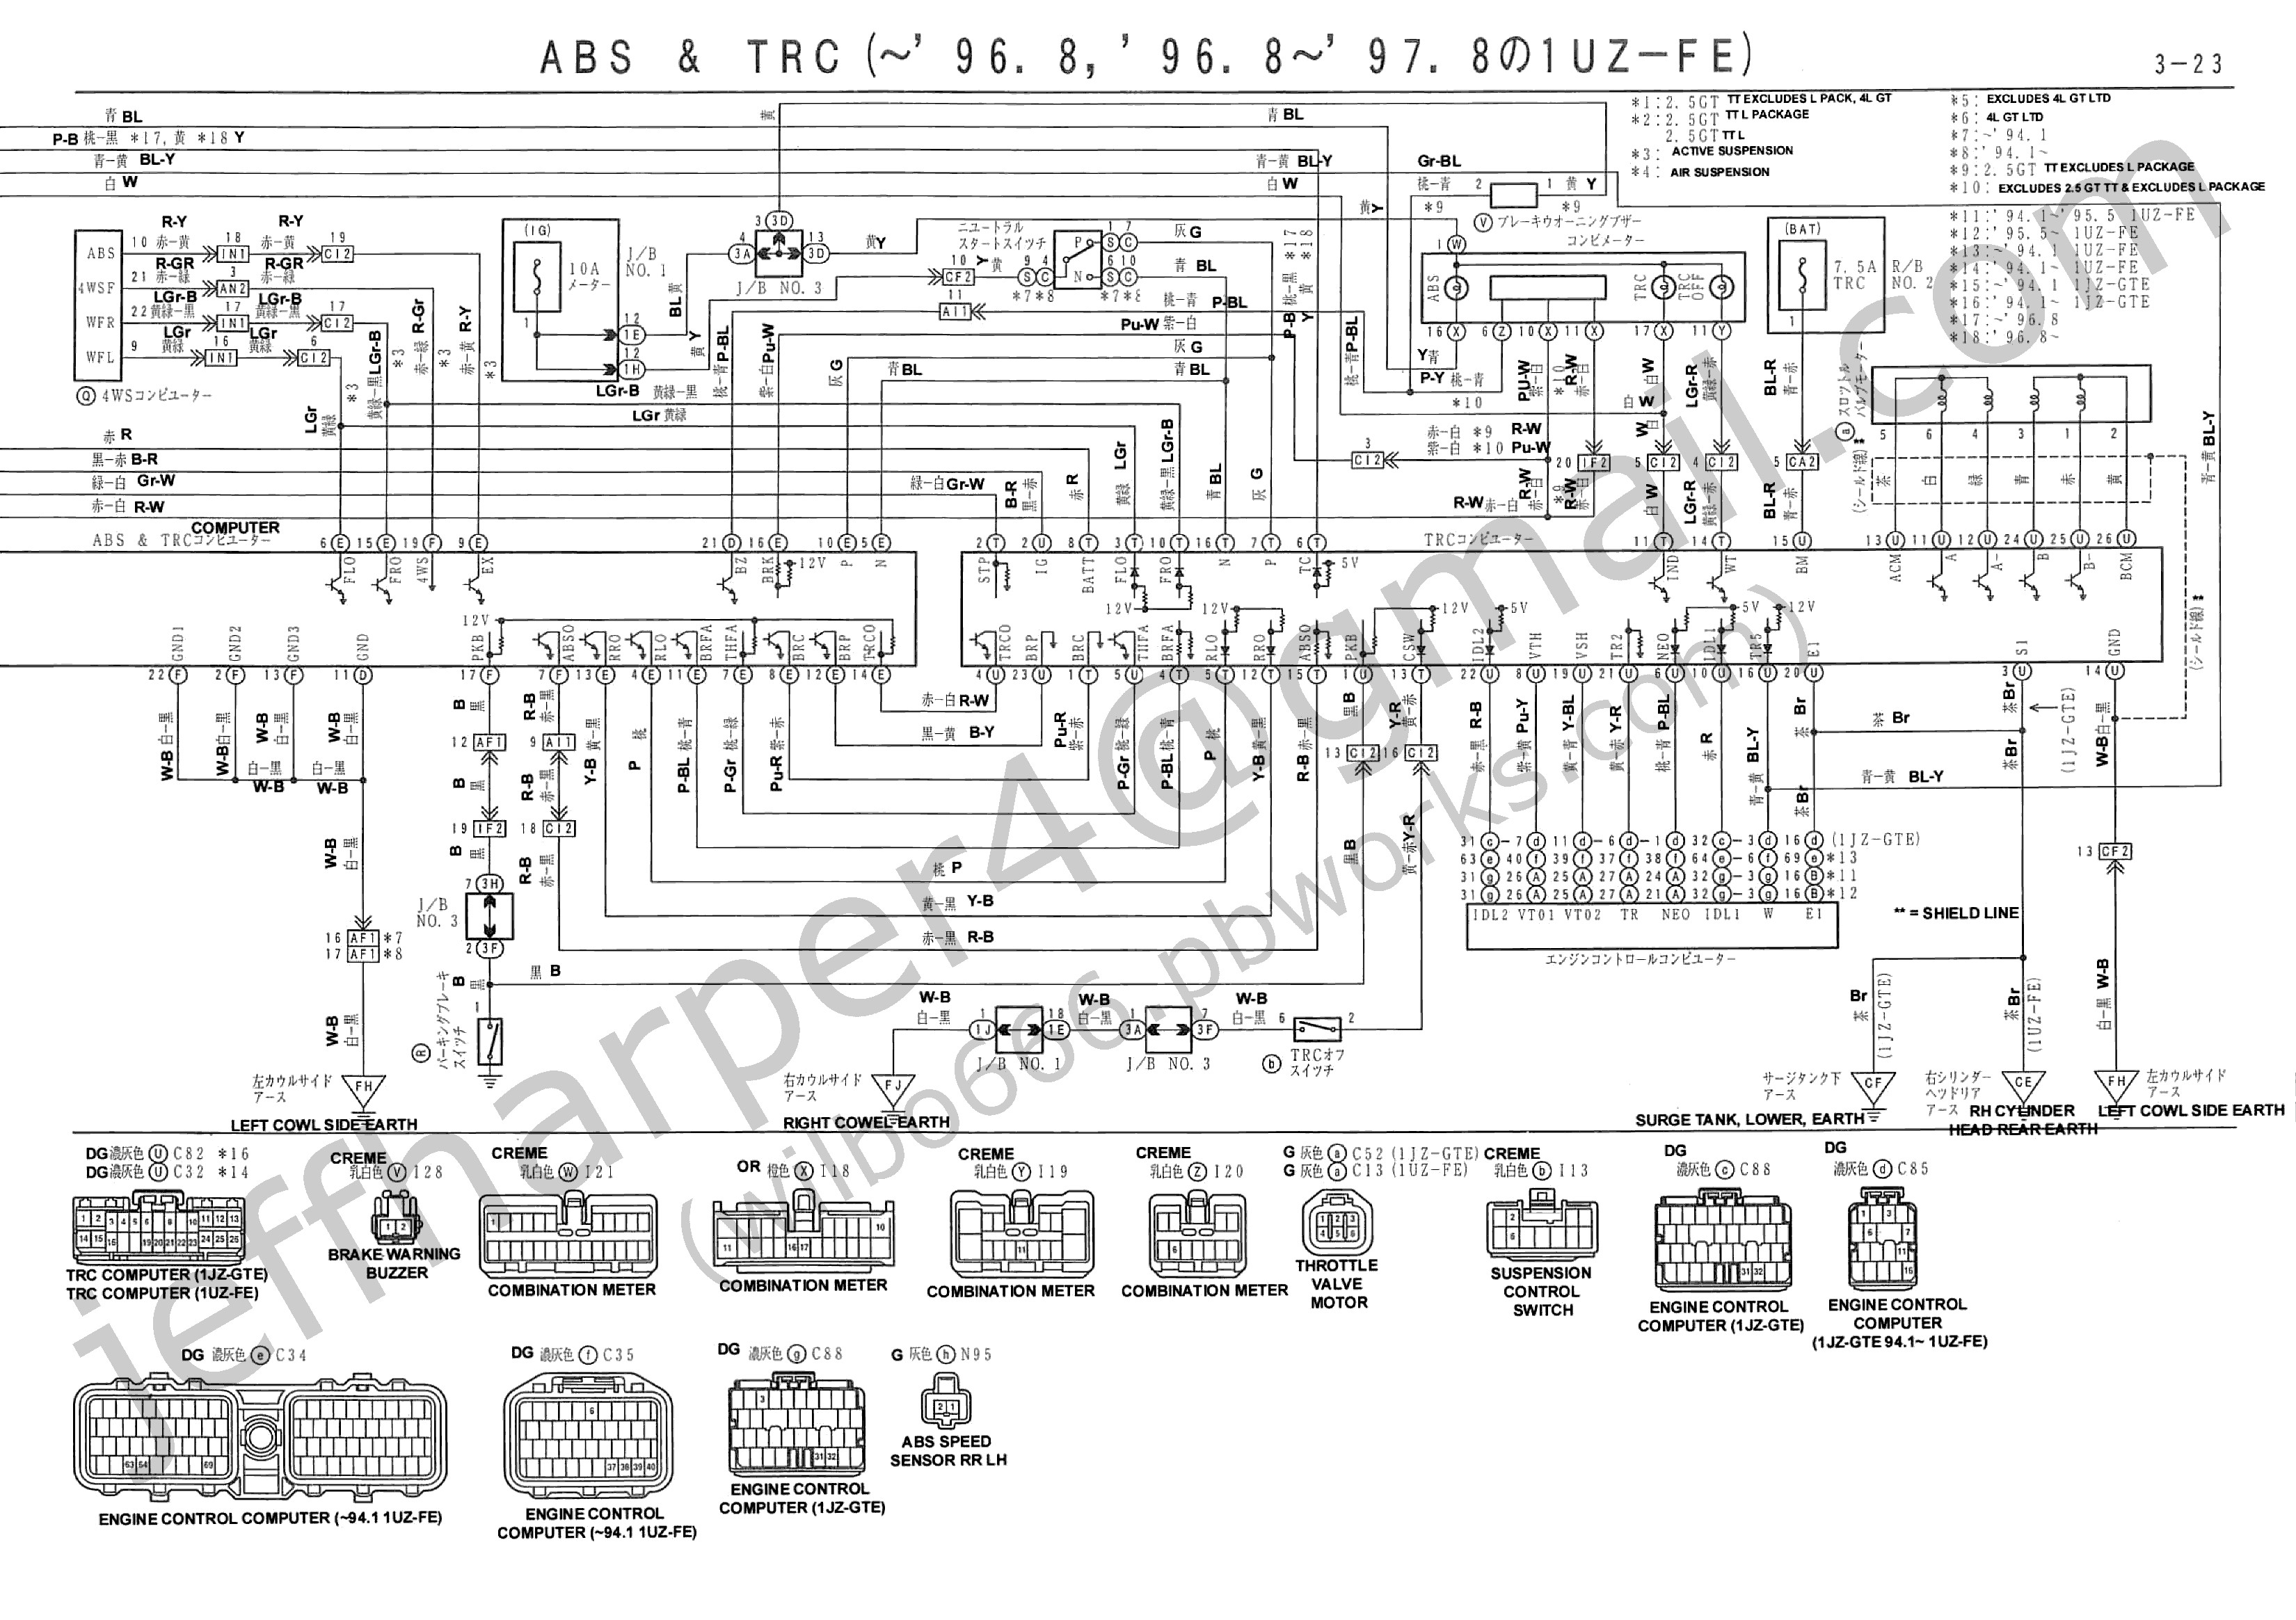 Fuel Injection System Diagram 1jz Series Ecu Wiring Harness Wiring Info • Of Fuel Injection System Diagram